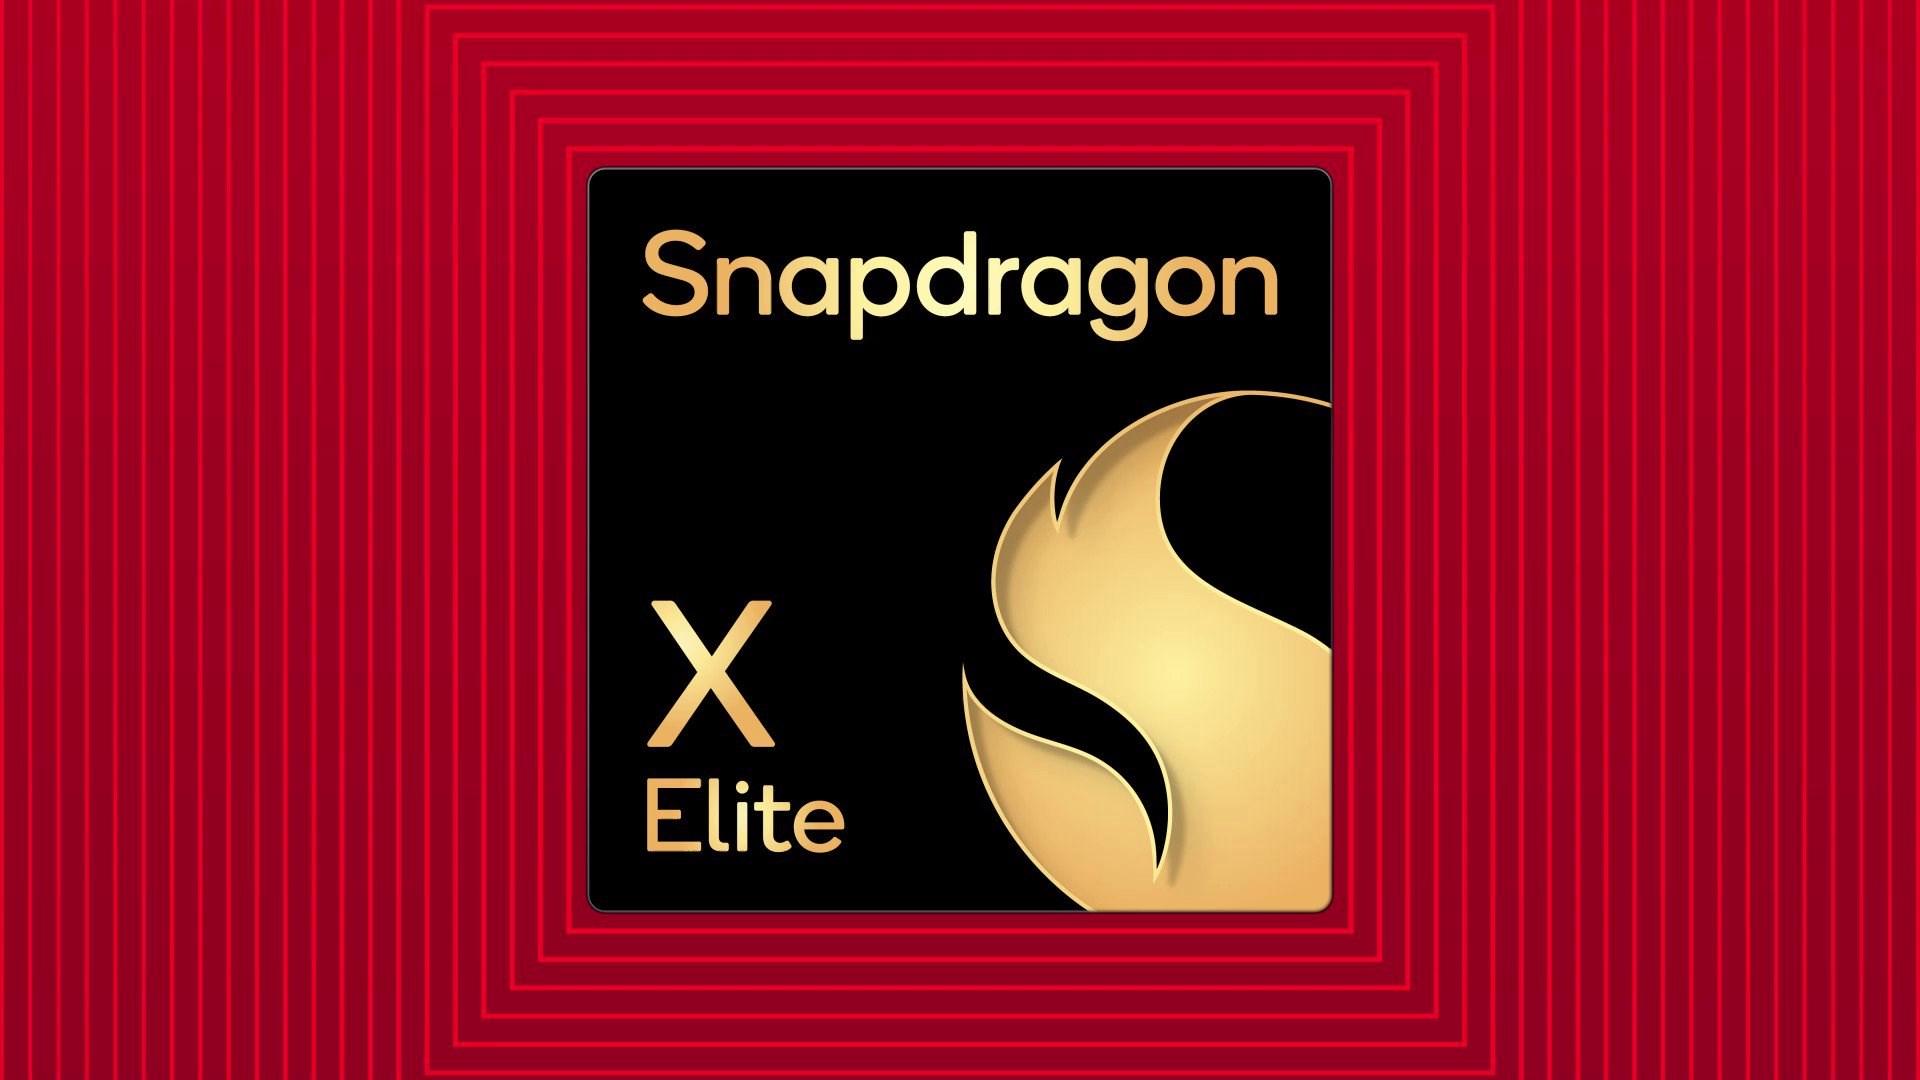 Nuvia tabanlı Snapdragon X Elite’in GPU performansı netleşiyor